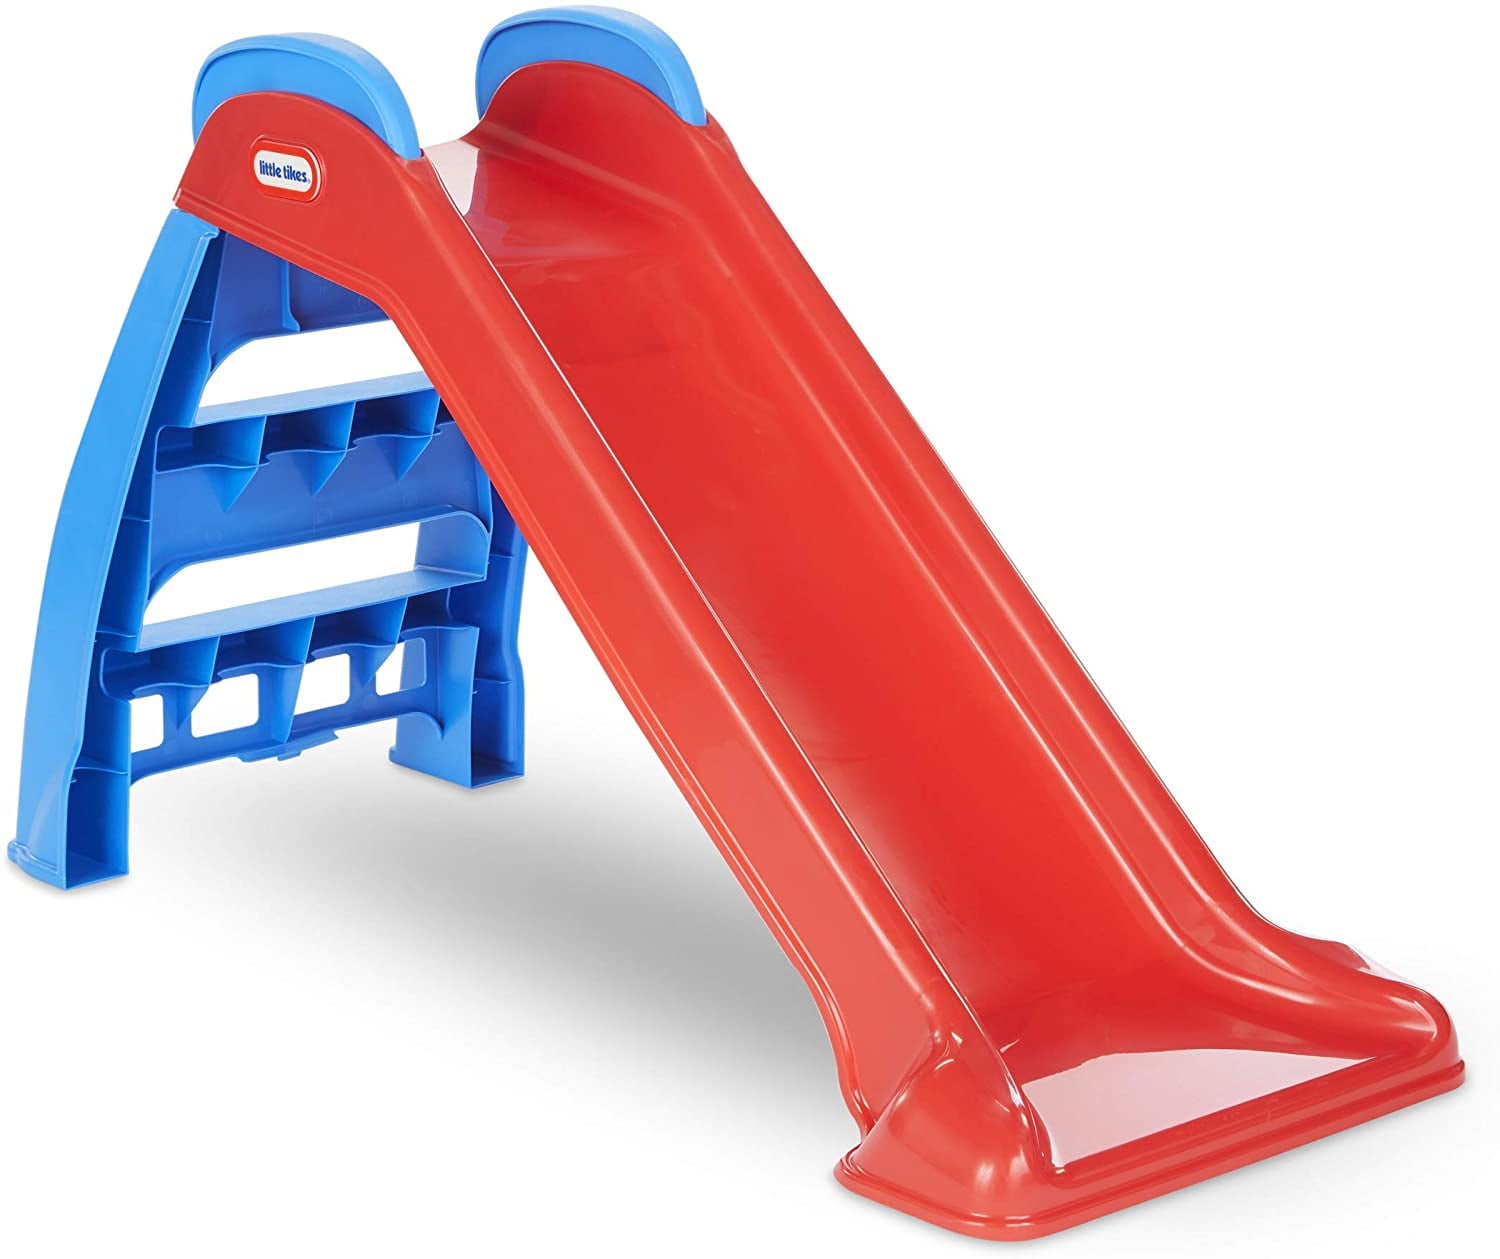 Little Tikes First Slide Toddler Slide, Easy Set Up Playset for Indoor